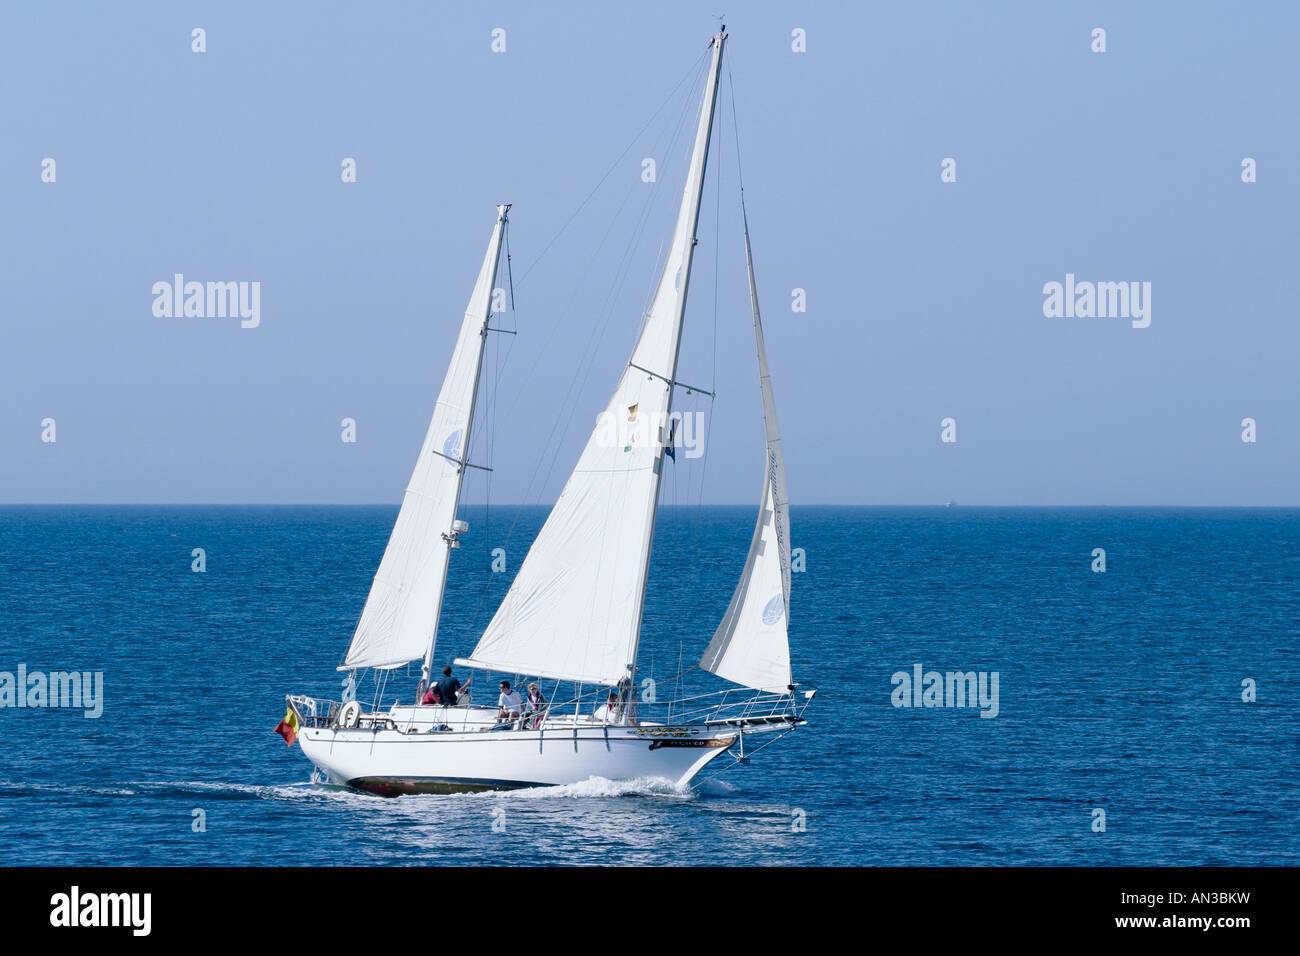 Sailing boat under sail Stock Photo